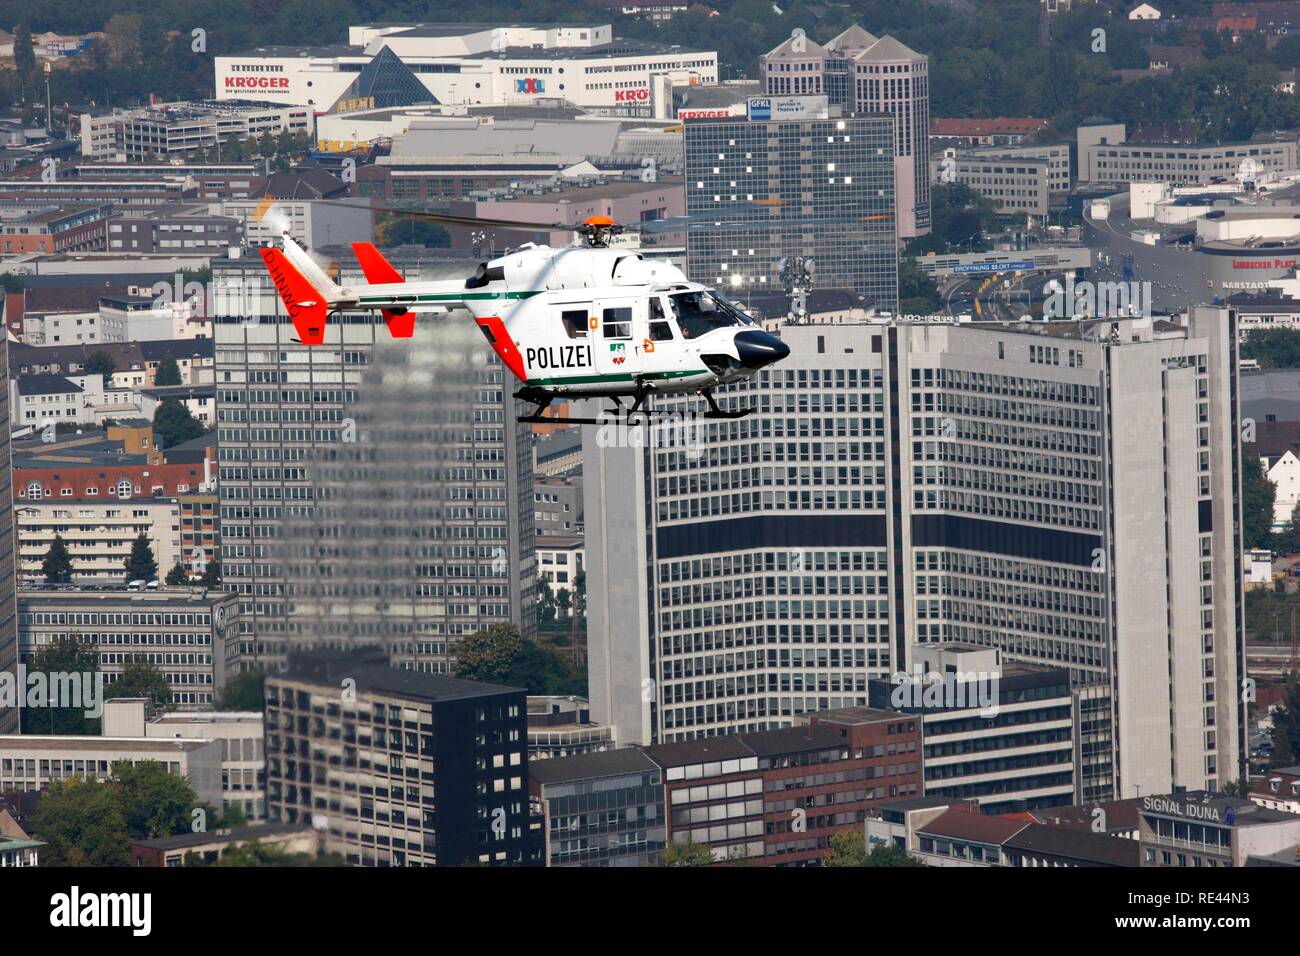 BK 117 hélicoptère de police de la police de Rhénanie du Nord lors d'un vol, vol de la mission centre-ville de Essen Banque D'Images